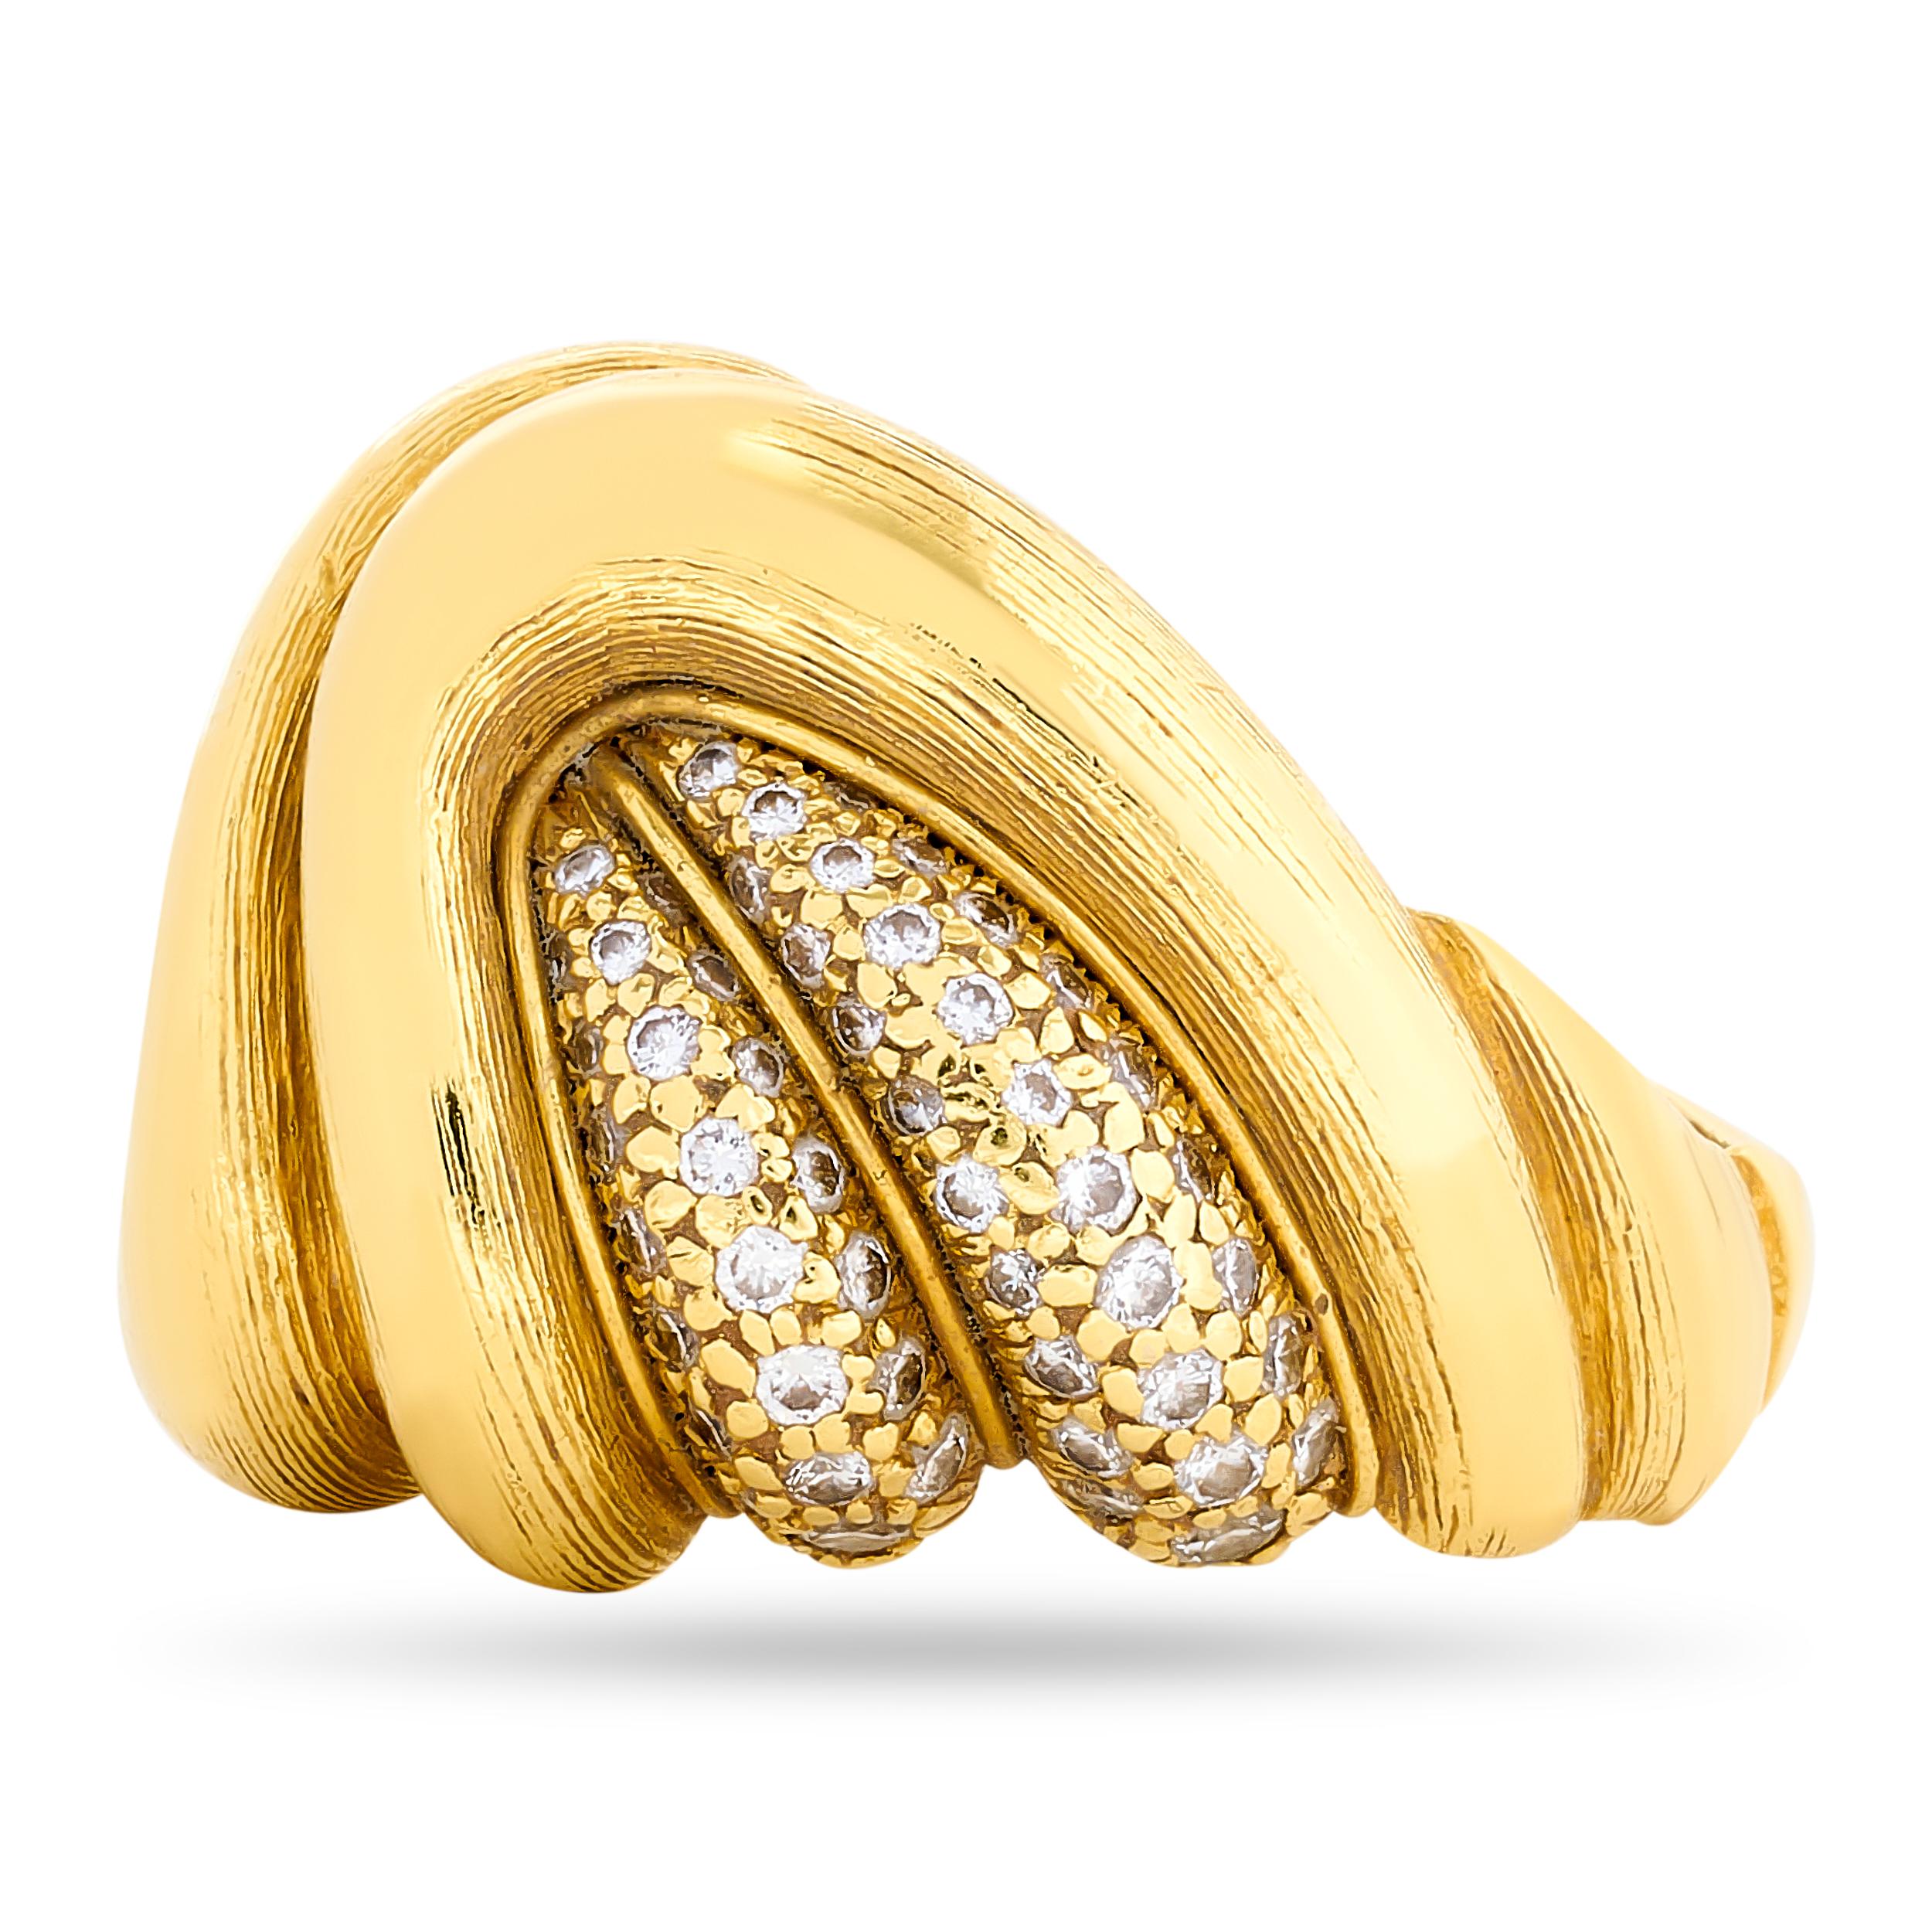 Entfesseln Sie die Kunstfertigkeit von Gold und Diamanten. Dieser Henry Dunay Ring aus gebürstetem Gold mit Diamanten ist ein Symbol für exquisite Handwerkskunst und luxuriösen Stil.

Dieser Ring aus 18-karätigem Gelbgold enthält 102 runde Diamanten